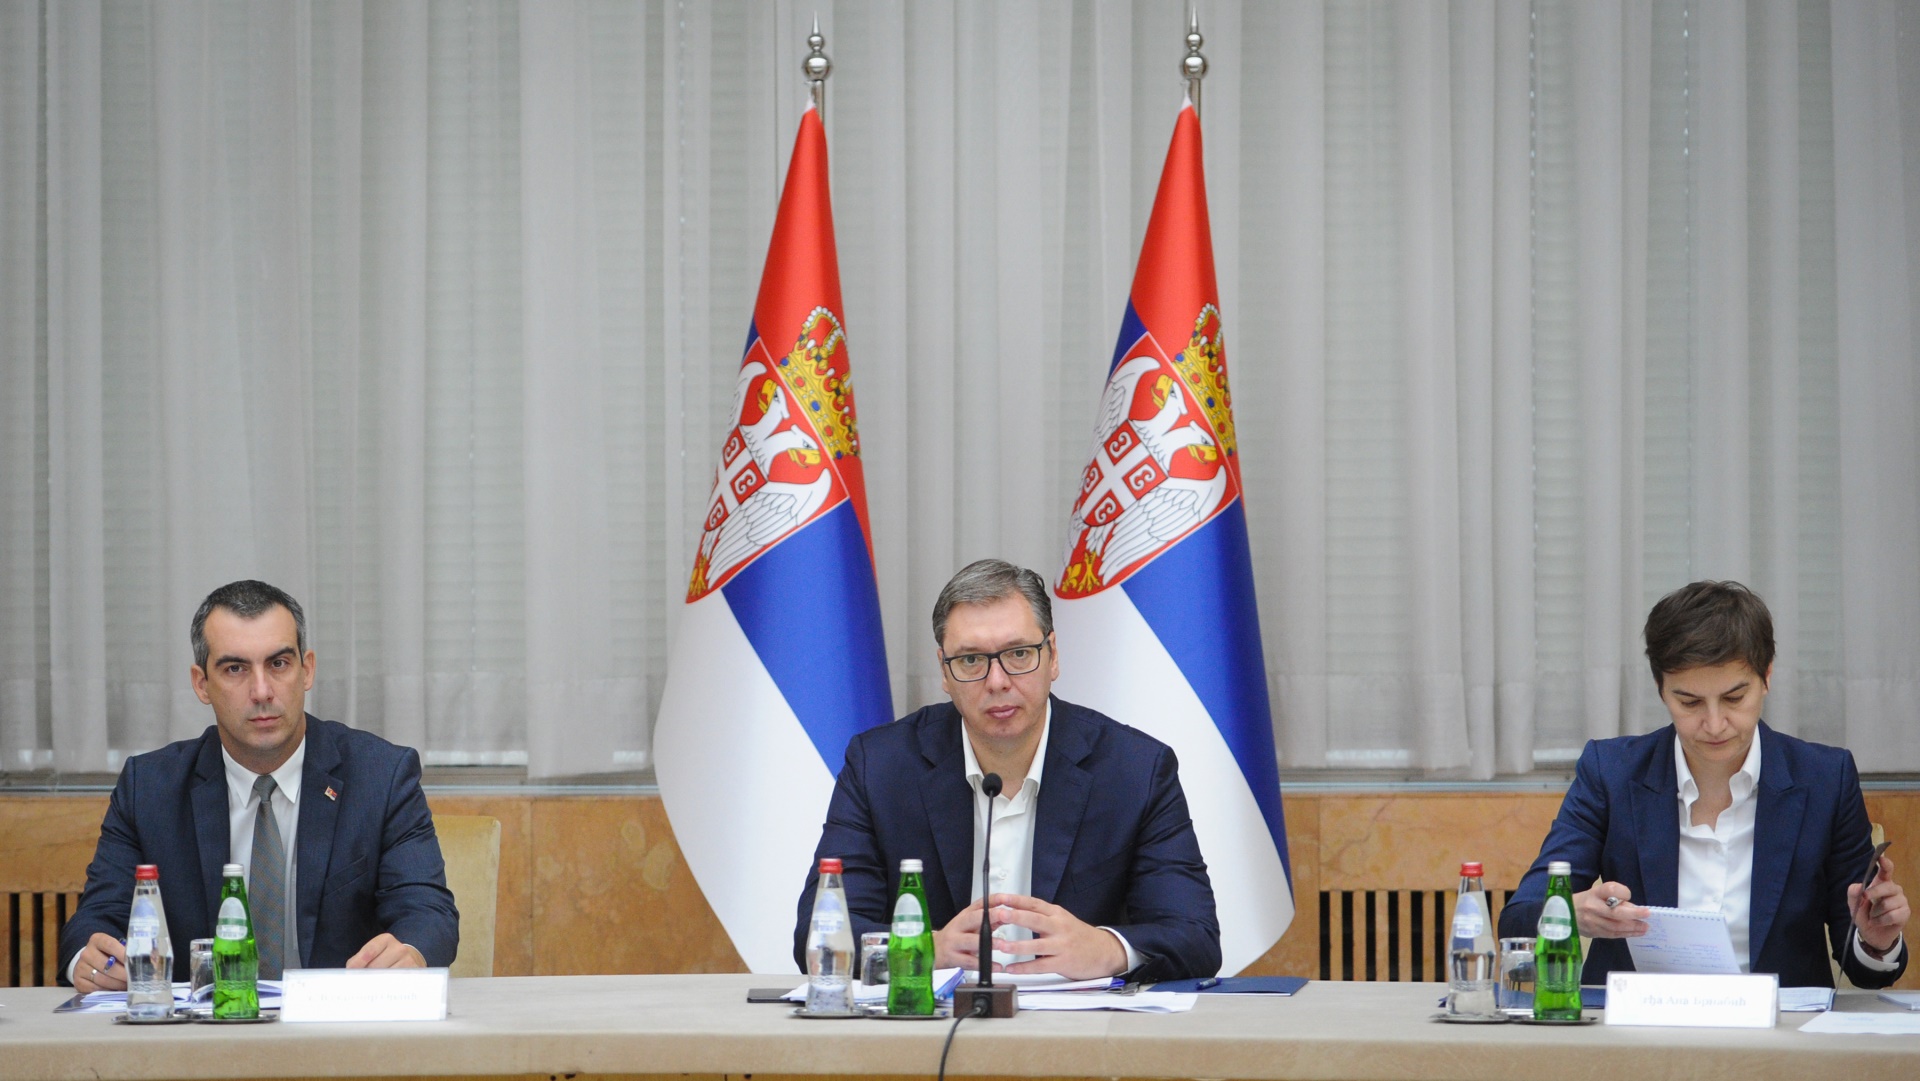 Председник Републике Србије Александар Вучић изјавио је, после седнице Савета за националну безбедност, да се разговарало о тежини ситуације у којој се Србија данас налази.